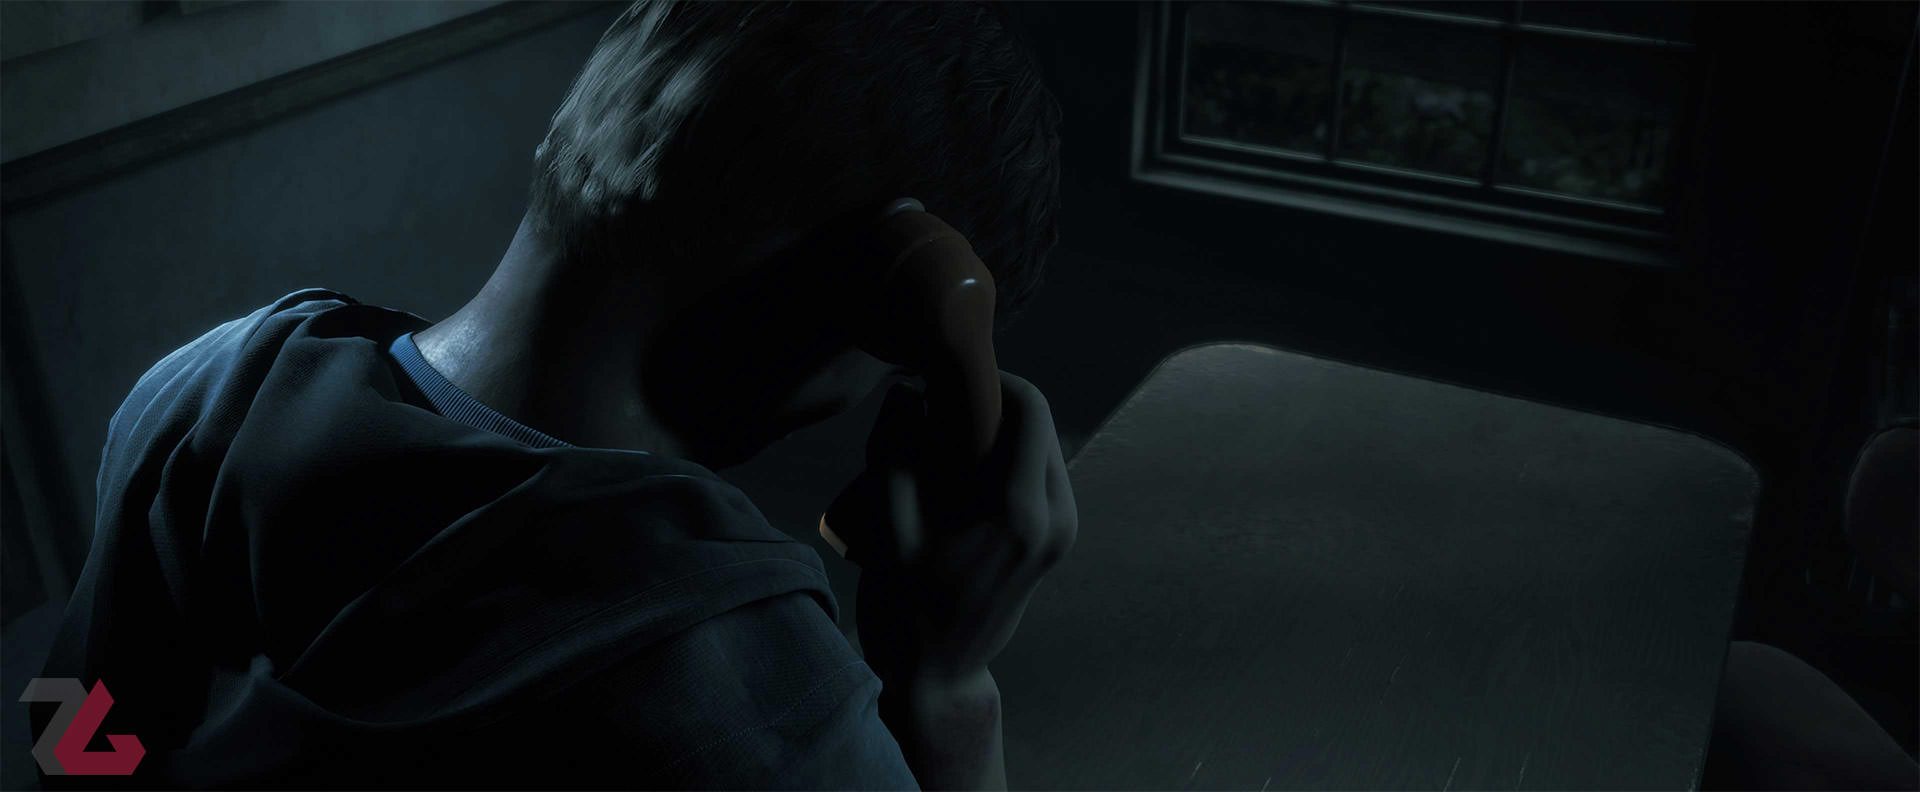 پسر در حال تلفن زدن با گوشی قدیمی در بازی ترسناک دارک پیکچرز: لیتل هوپ